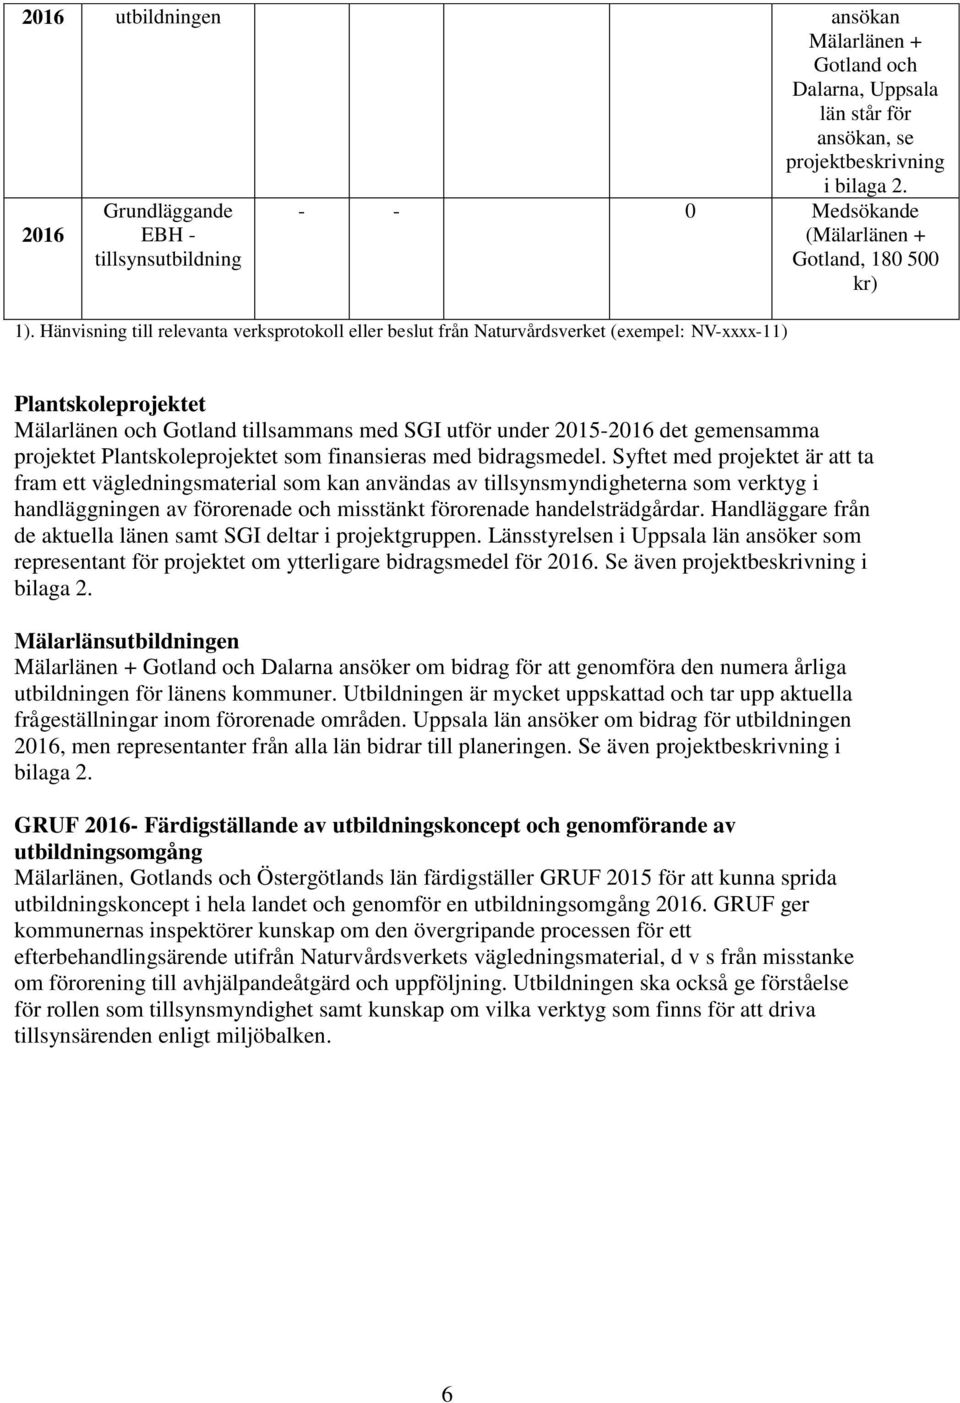 Hänvisning till relevanta verksprotokoll eller beslut från Naturvårdsverket (exempel: NV-xxxx-11) Plantskoleprojektet Mälarlänen och Gotland tillsammans med SGI utför under 2015-2016 det gemensamma